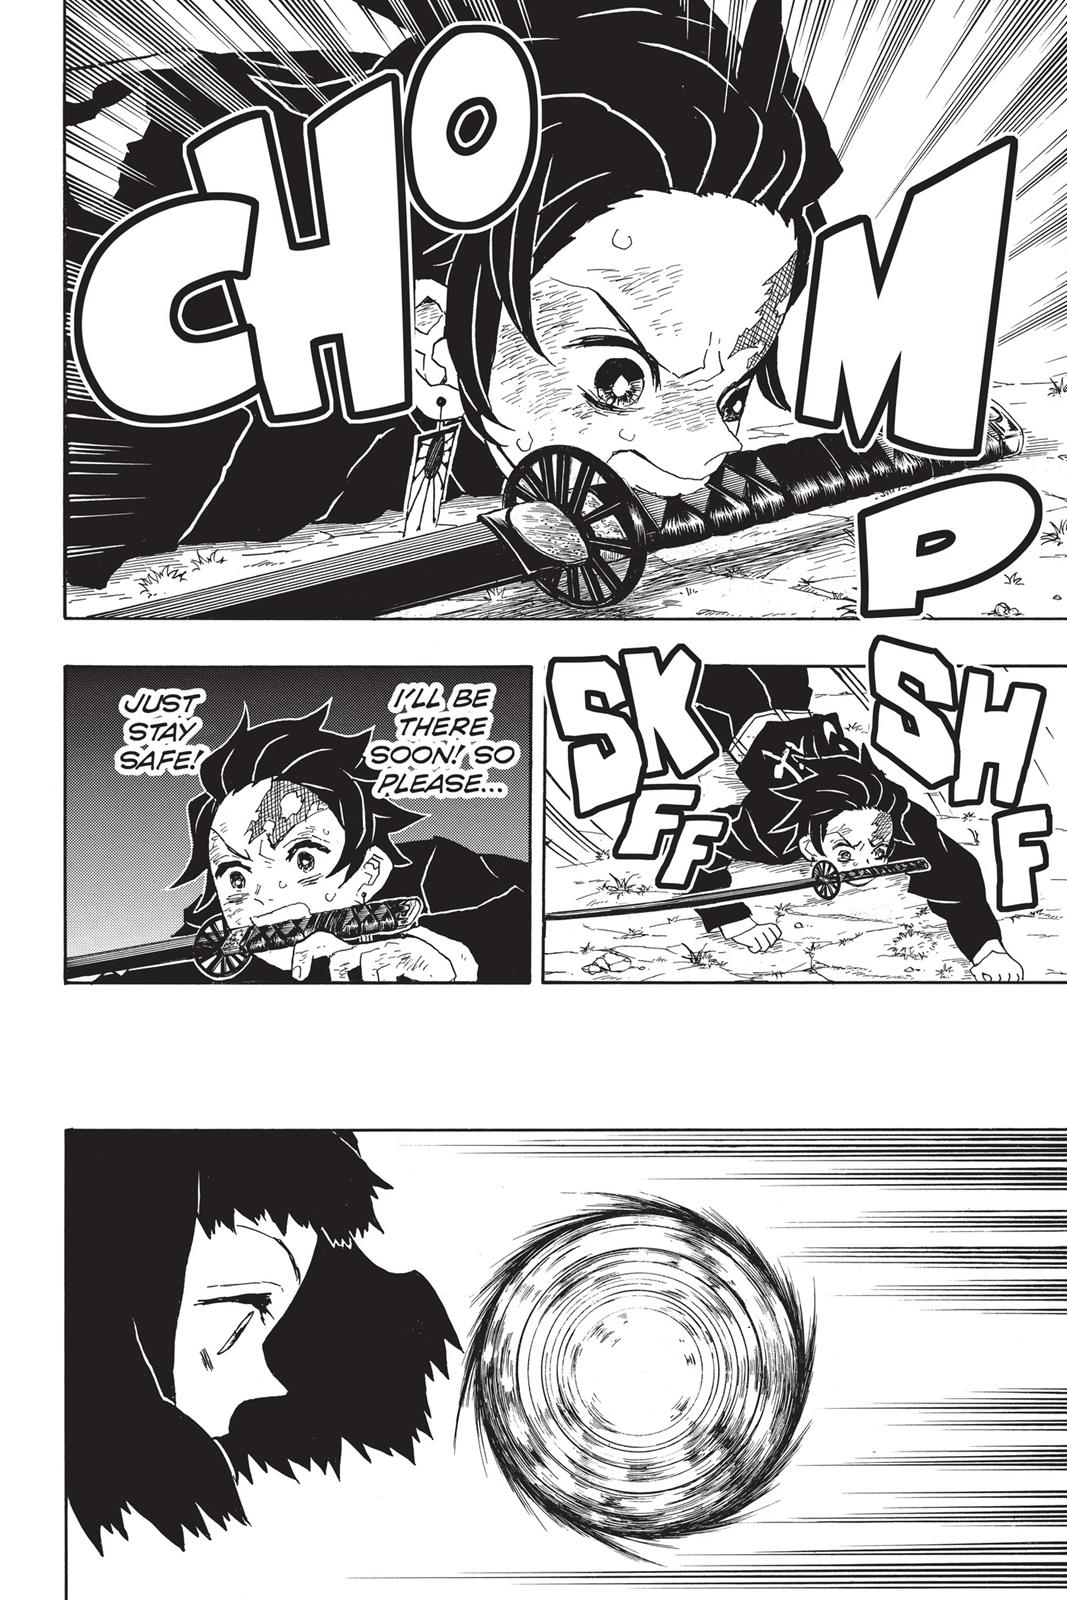 Demon Slayer Manga Manga Chapter - 18 - image 5